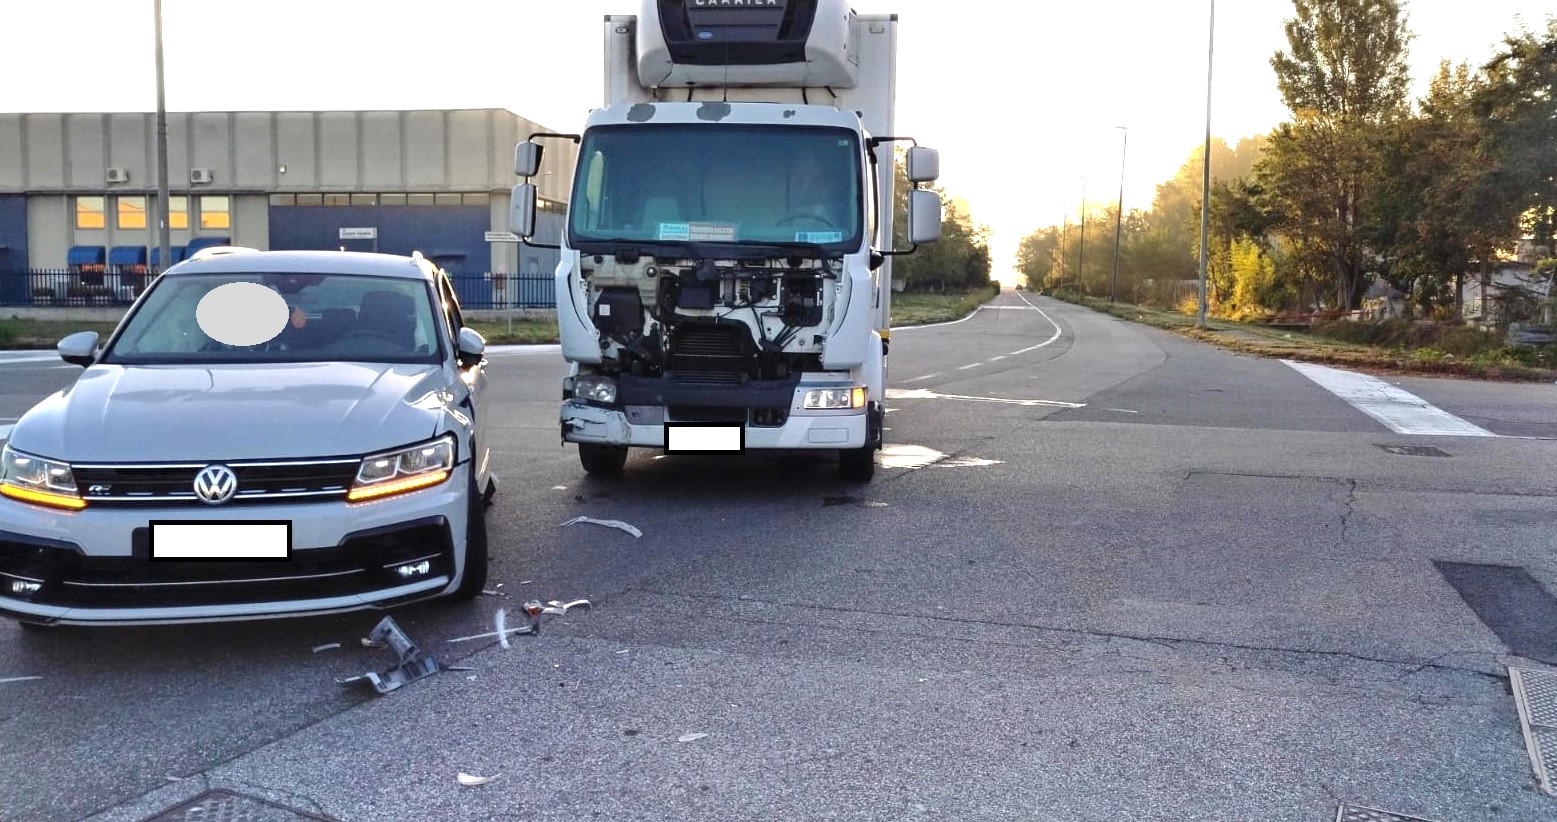 VERCELLI AREA INDUSTRIALE – Collisione auto contro furgone